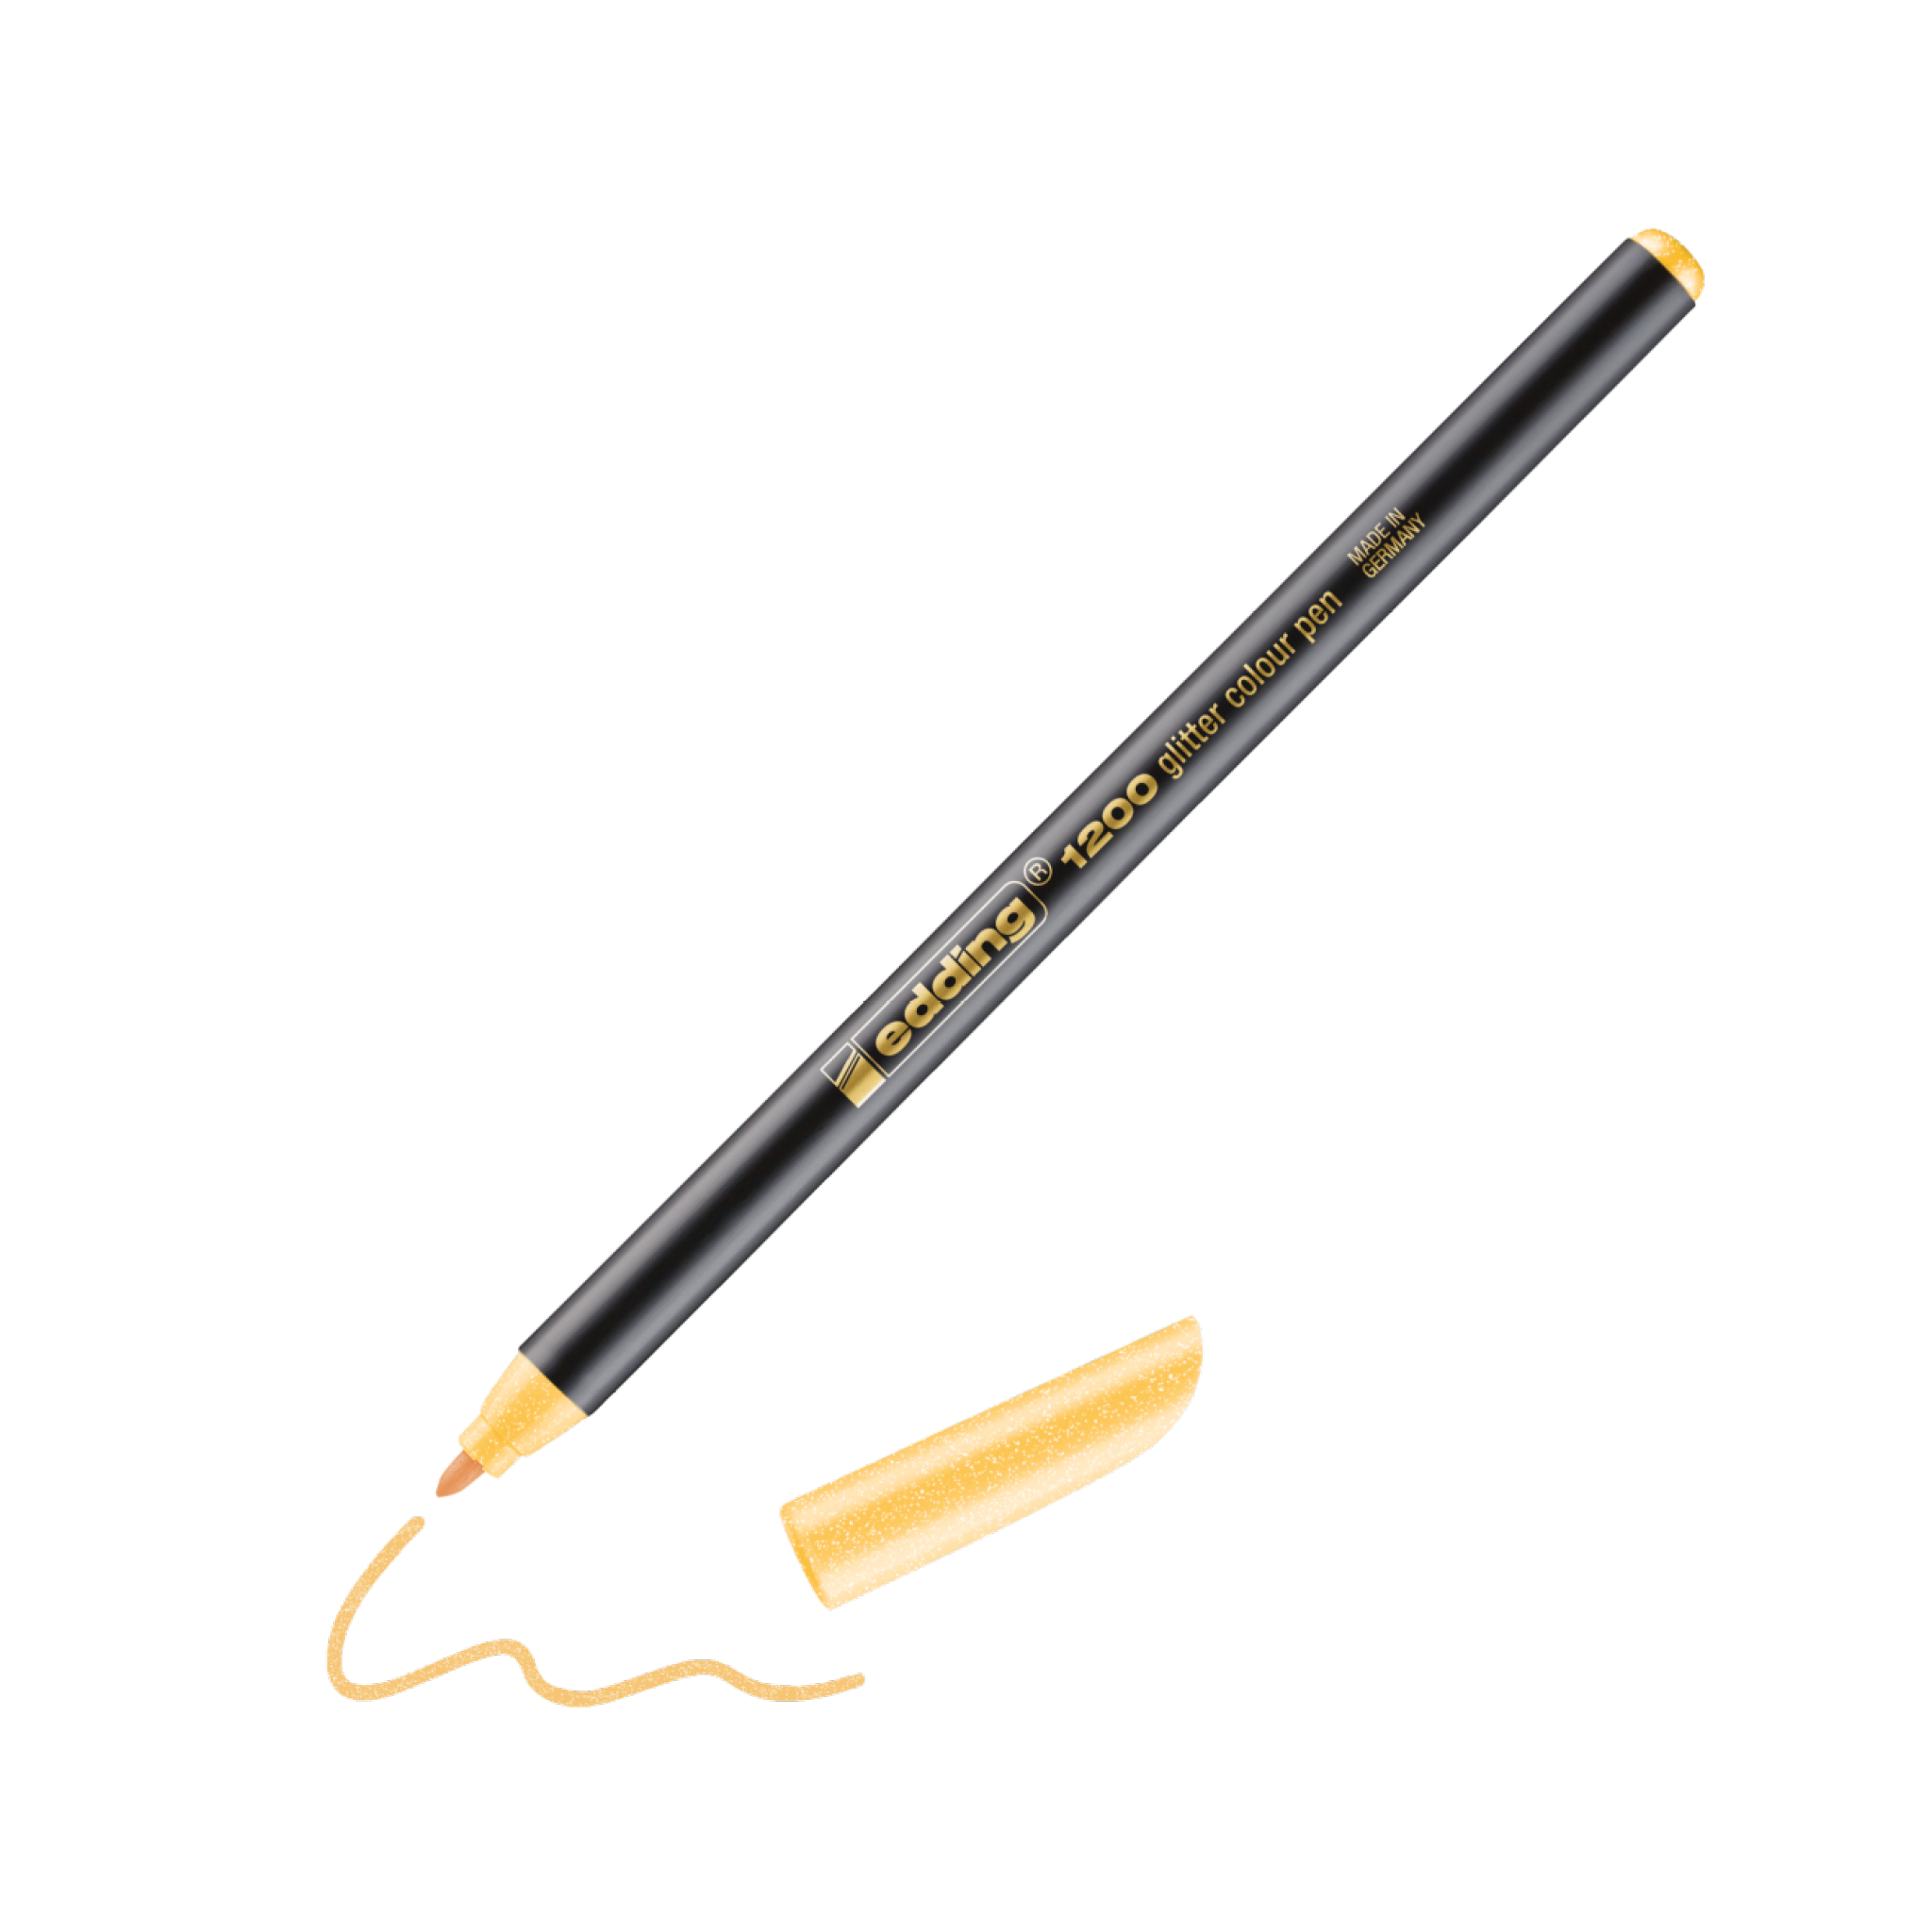 Eine realistische Grafik eines schwarz-goldenen edding-Kalligrafiestifts ohne Kappe. Der Stift ist diagonal abgewinkelt und eine orangefarbene edding 1200 Glitter Fasermaler-Linie veranschaulicht seine Verwendung.